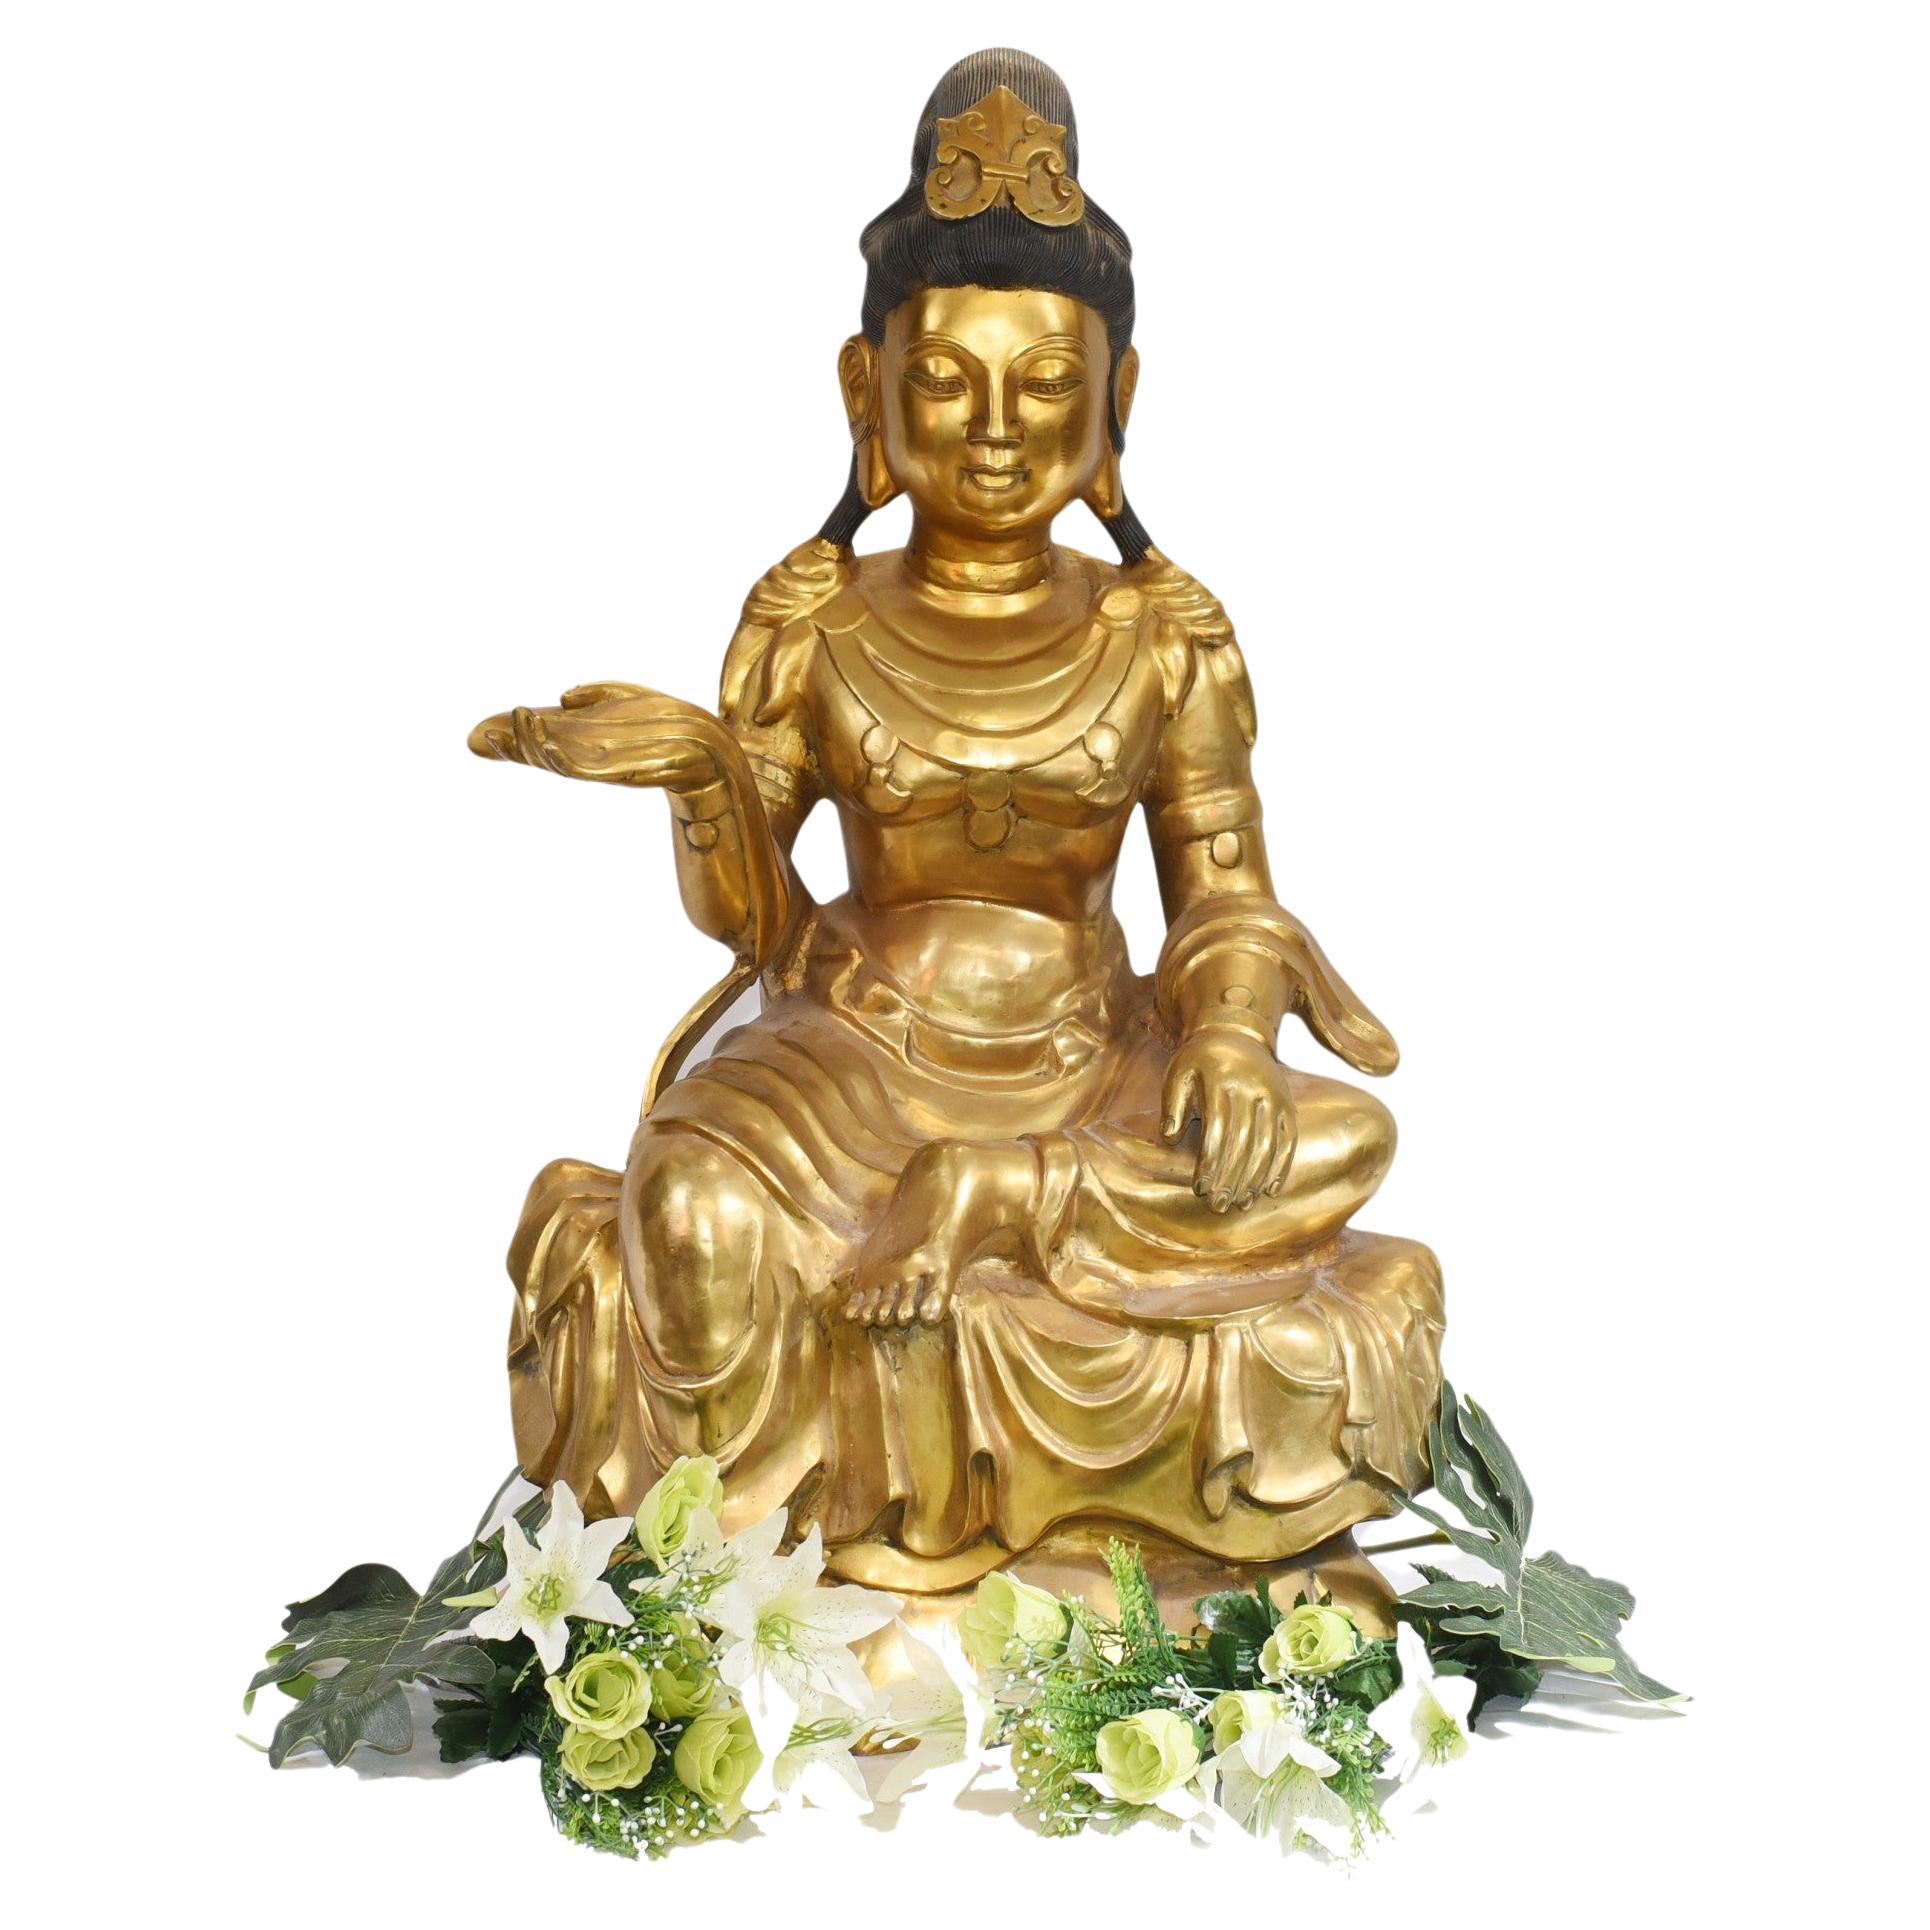 Statue de Bouddha doré assis, sculpture en bronze de la méditation népalaise